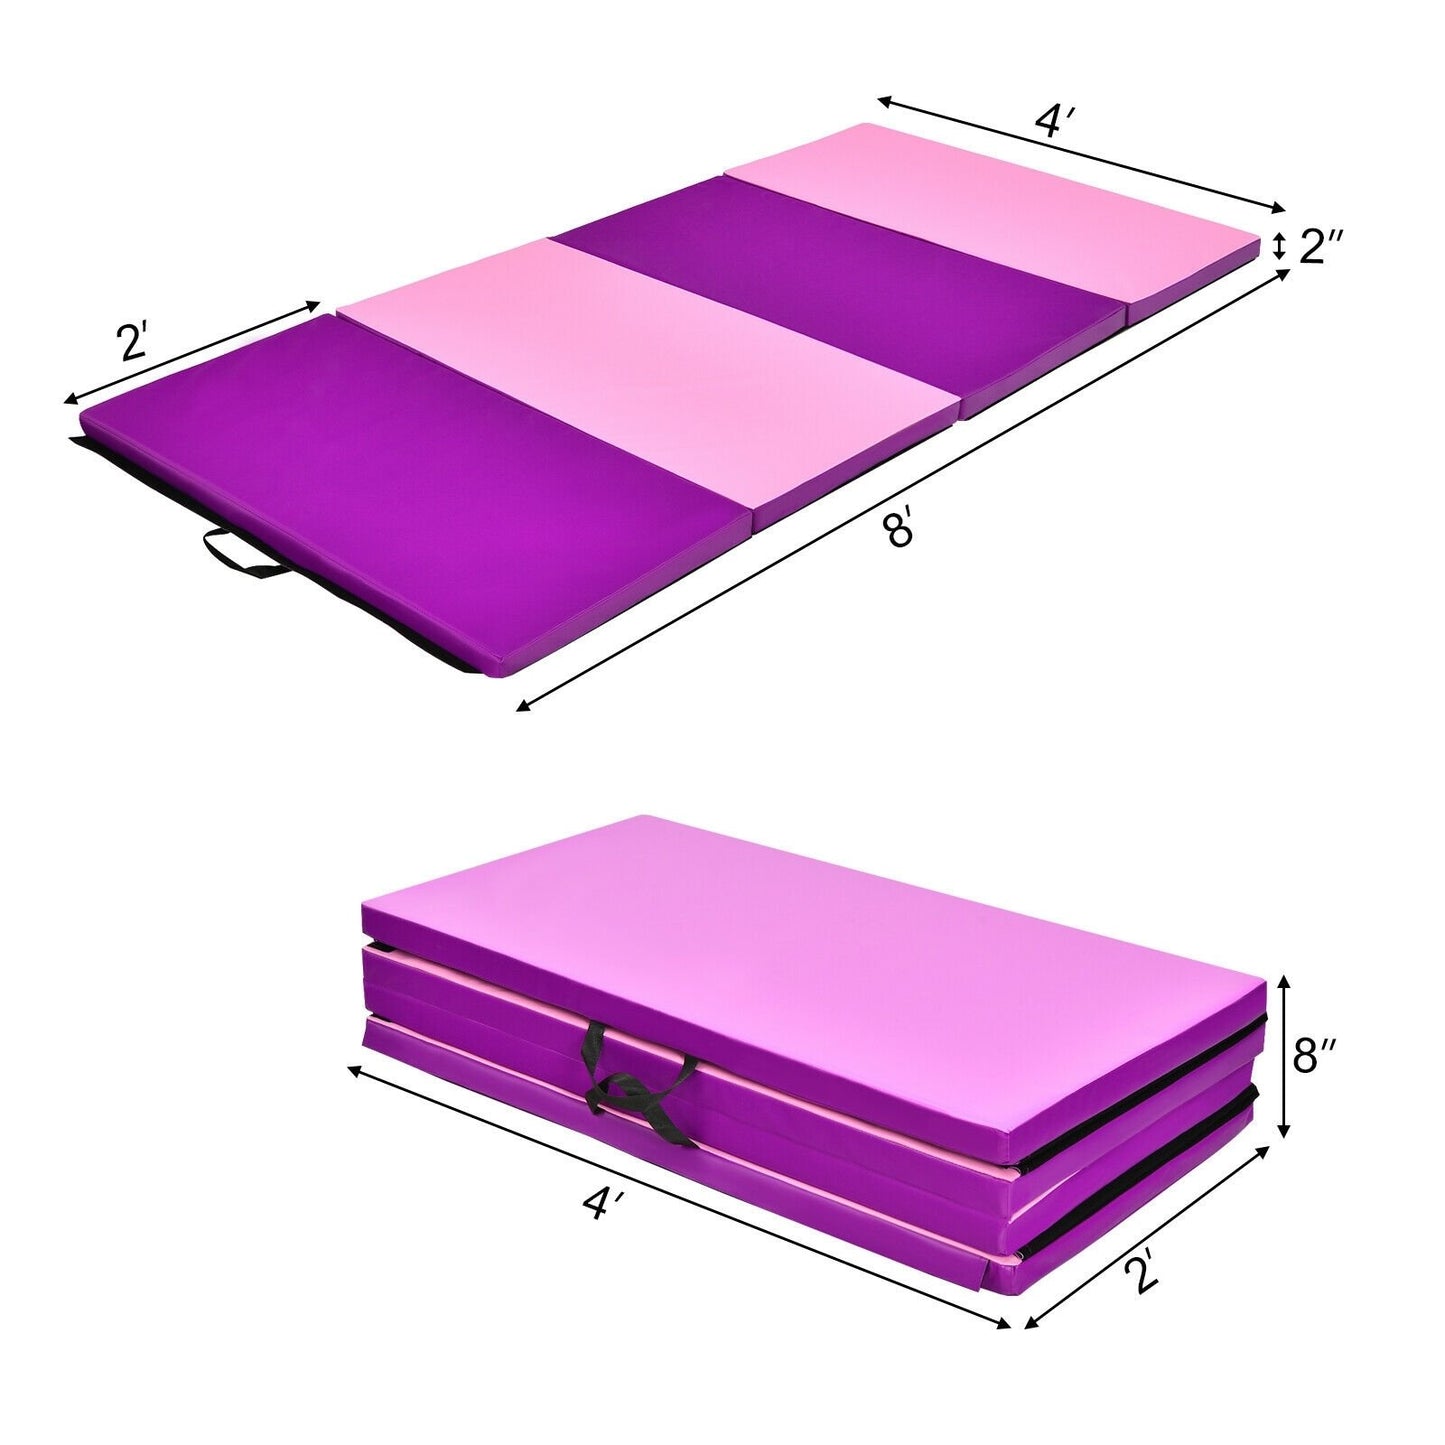 4 Feet x 8 Feet Folding Gymnastics Panel Mat with Handles Hook, Pink